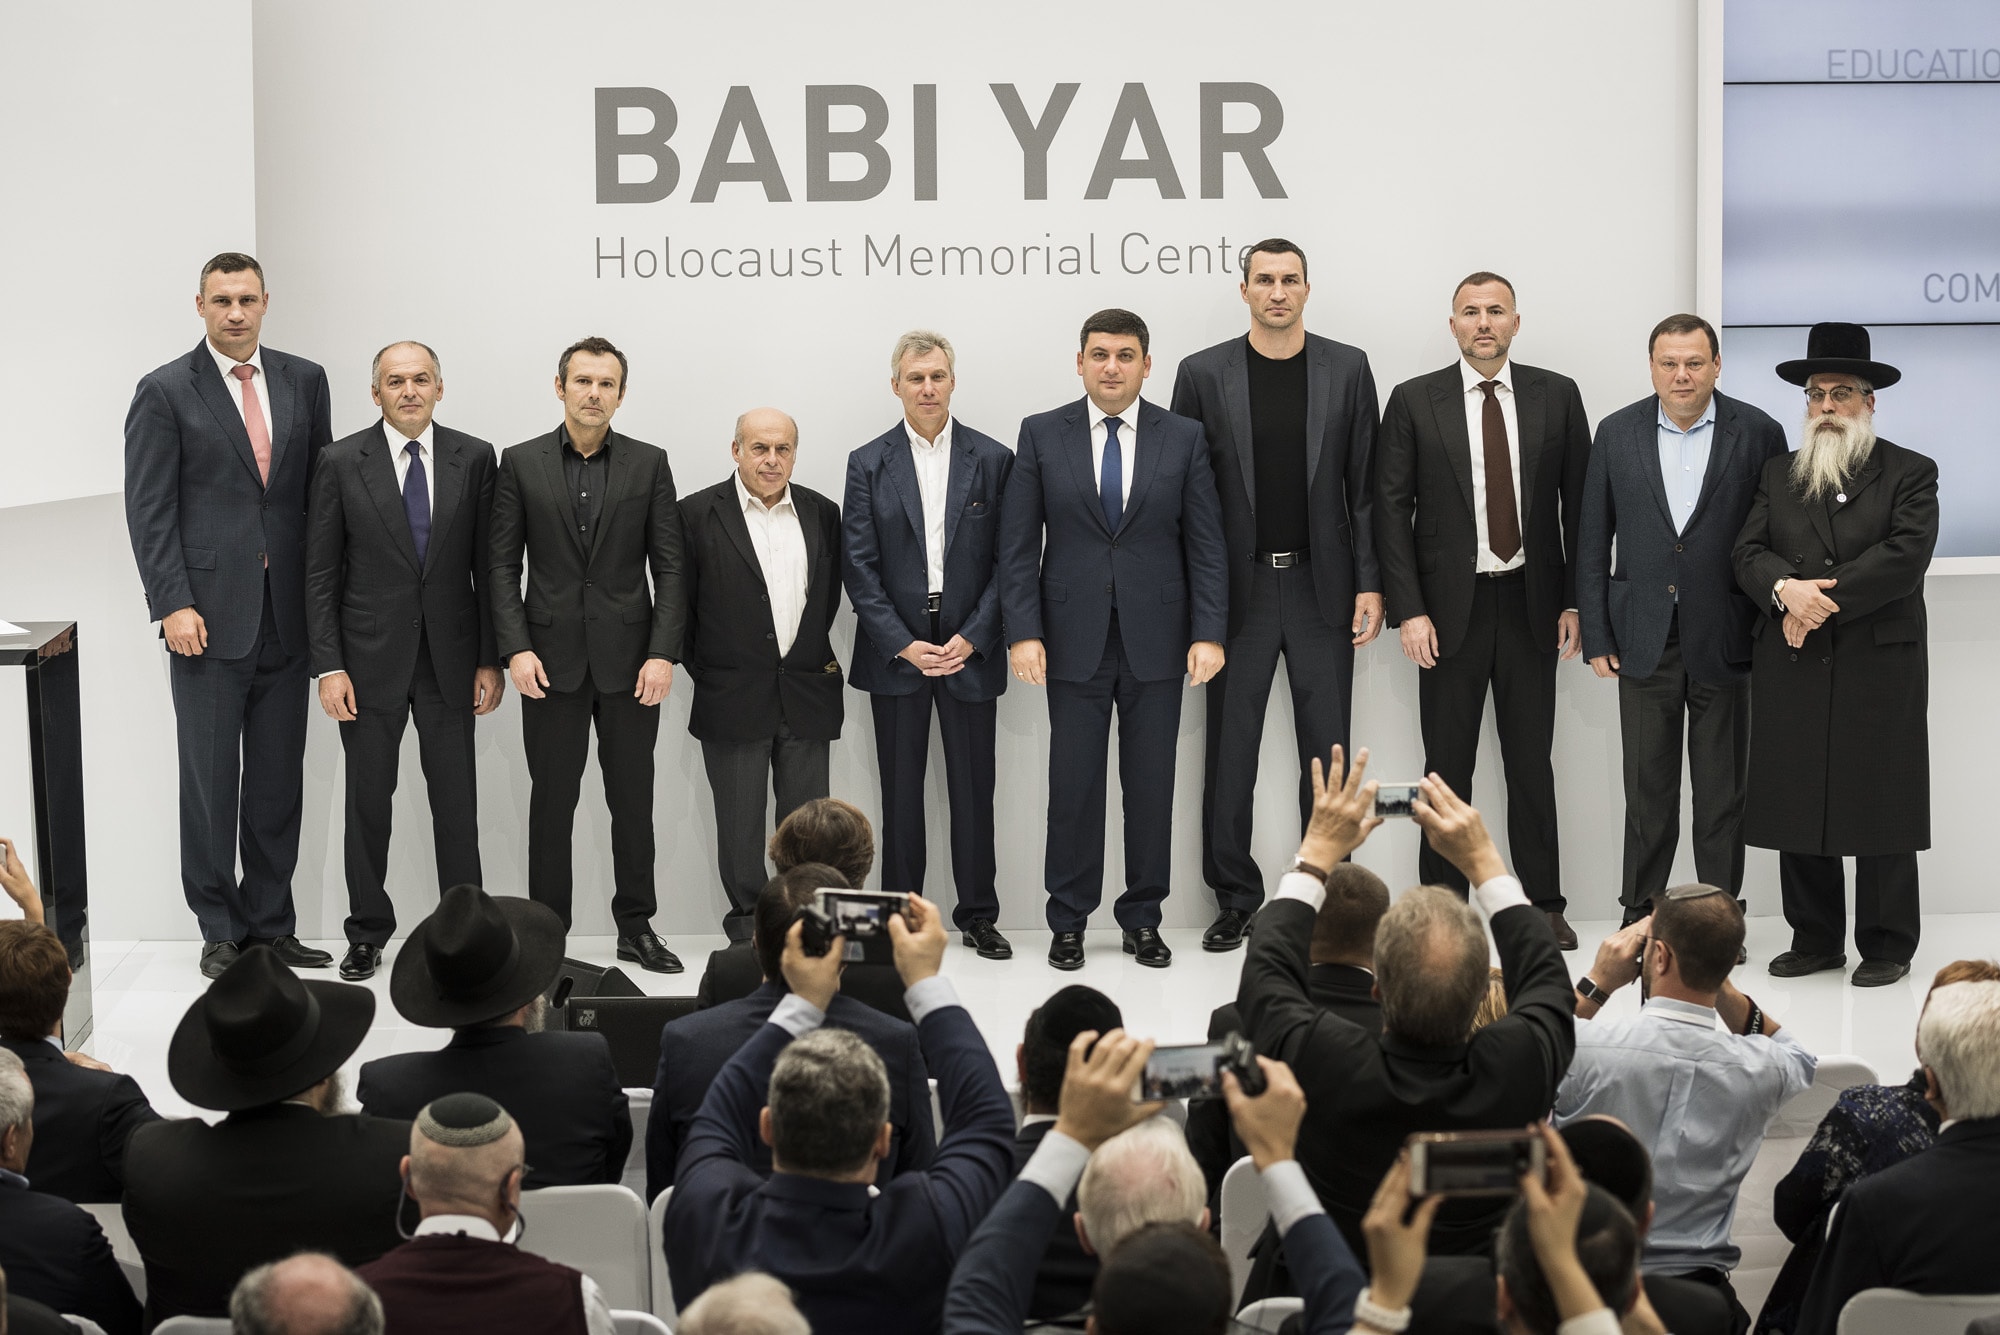 New Holocaust Memorial Center at Babi Yar